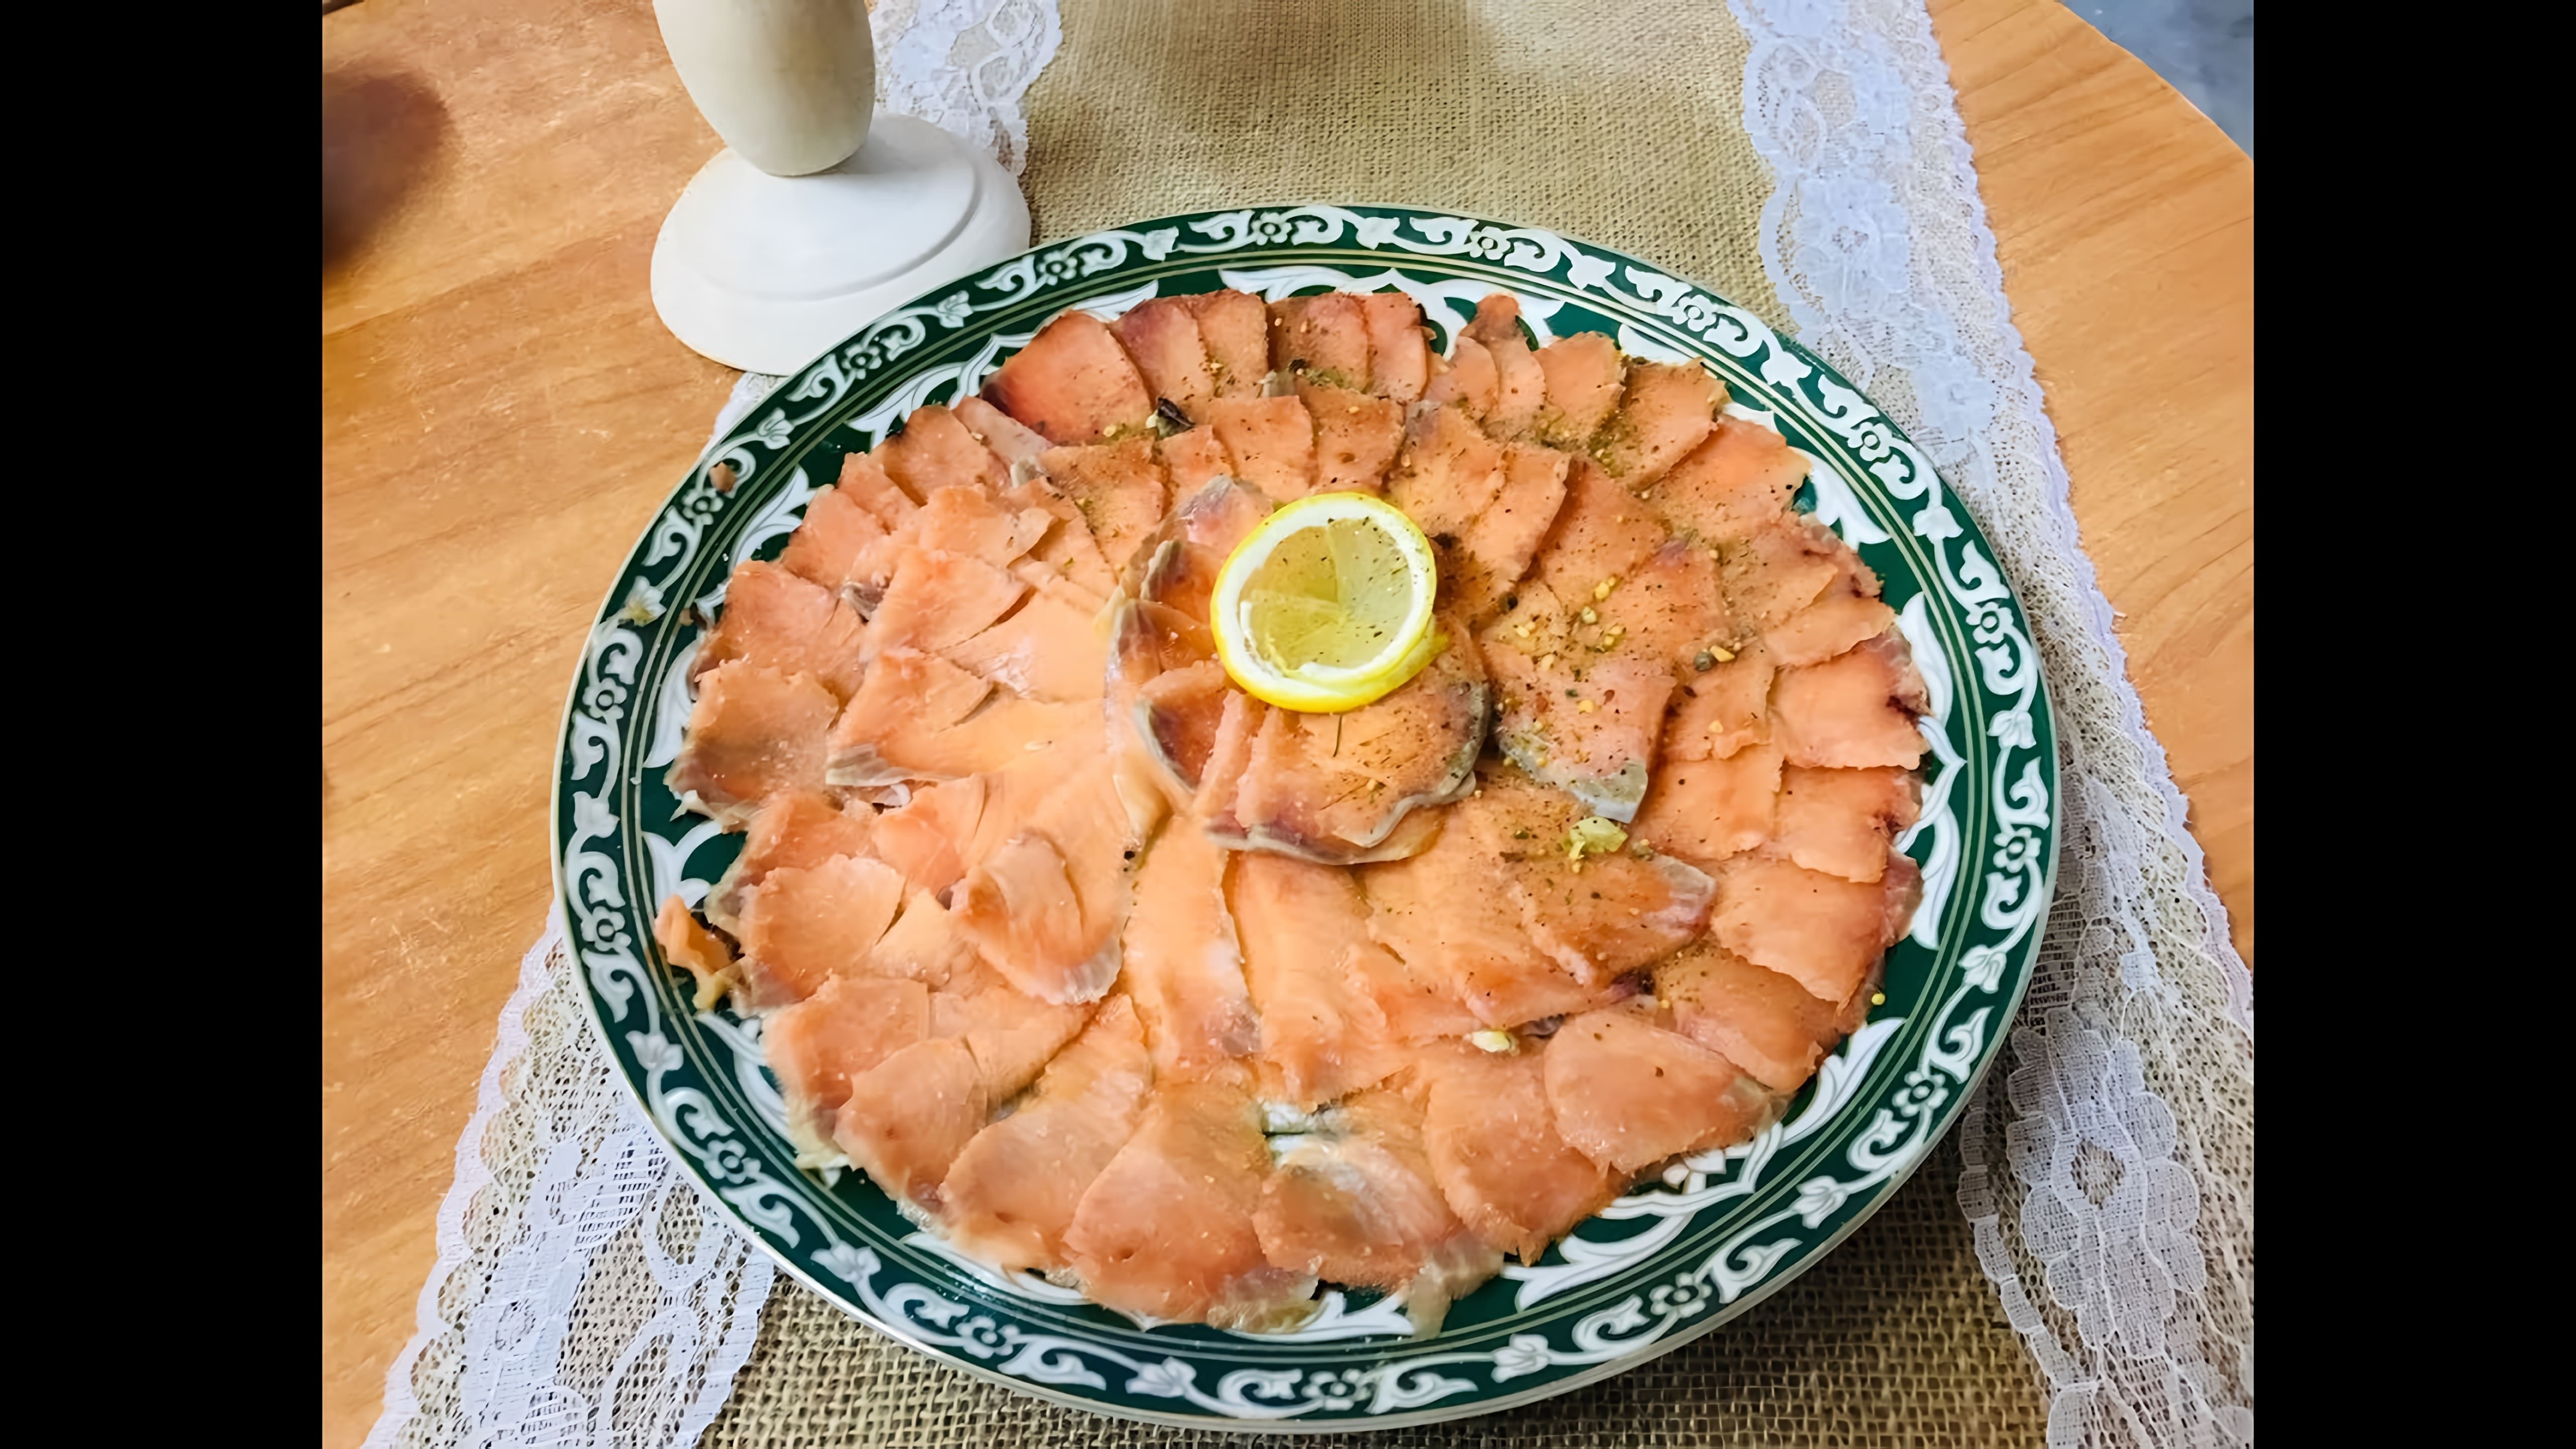 В этом видео демонстрируется рецепт приготовления закуски из красной рыбы под названием "строганина"